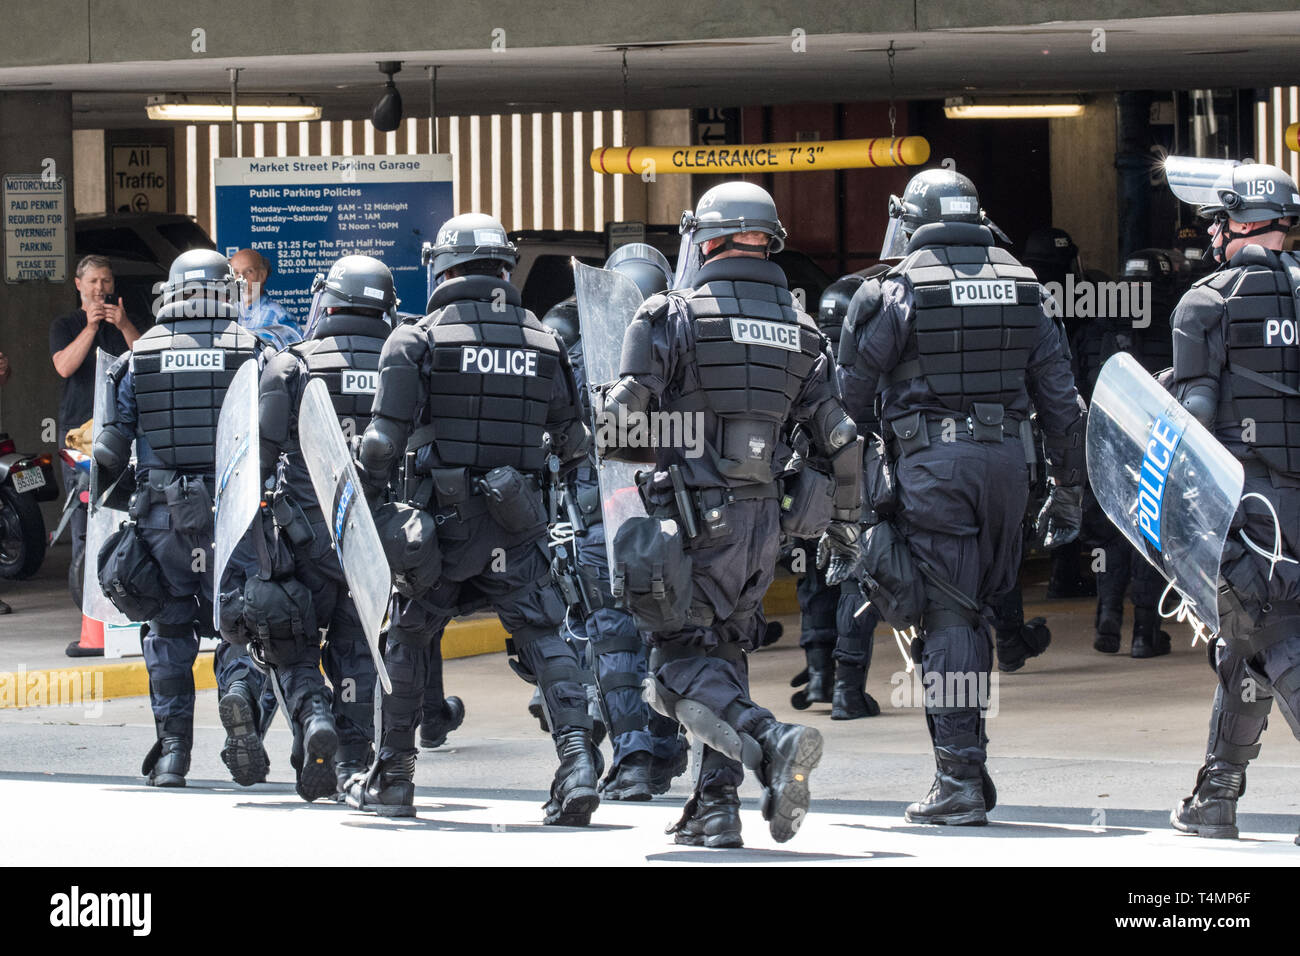 Der Polizei in Kampfausrüstung März in Urban Street Garage zu sichern Gewalt Stockfoto